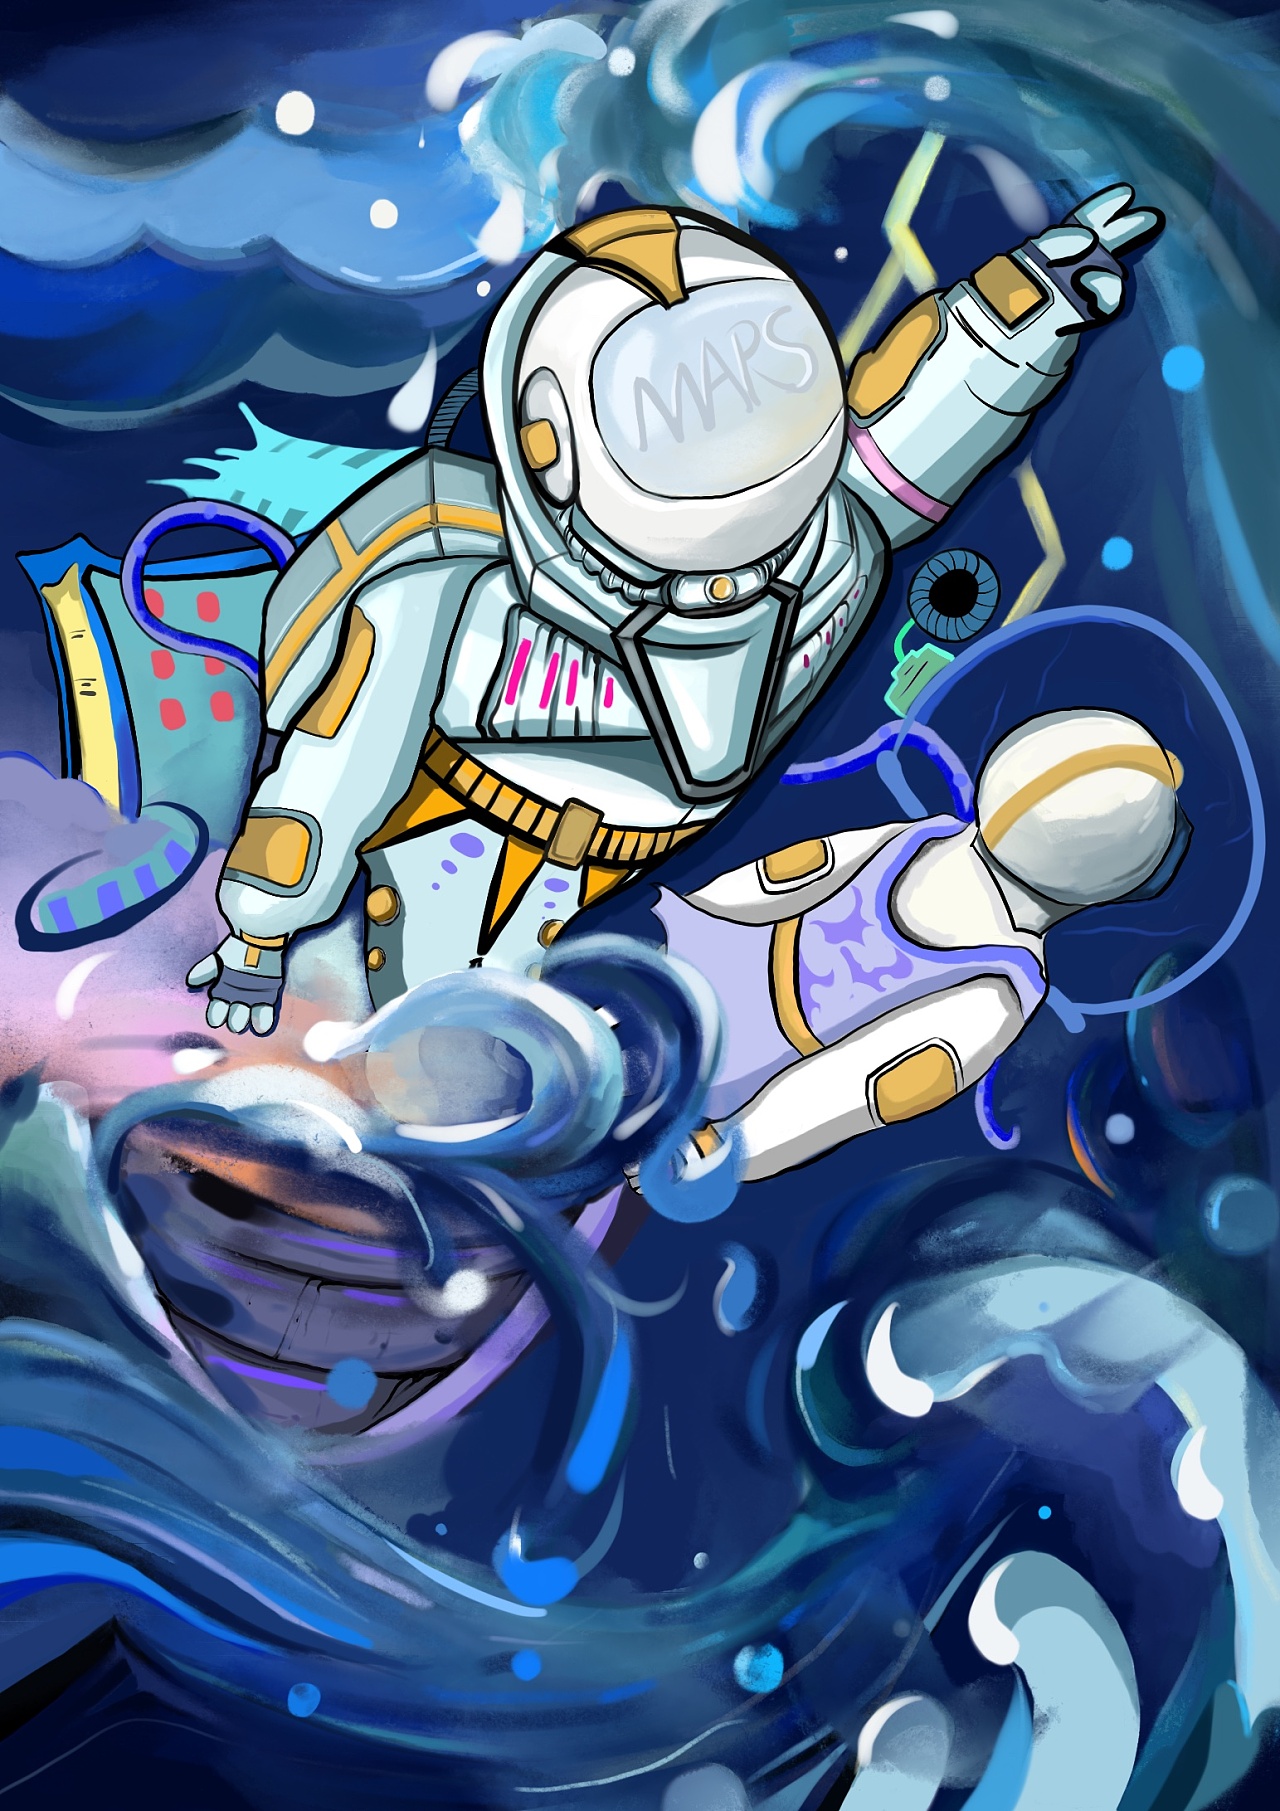 宇航员动漫人物 梦幻图片